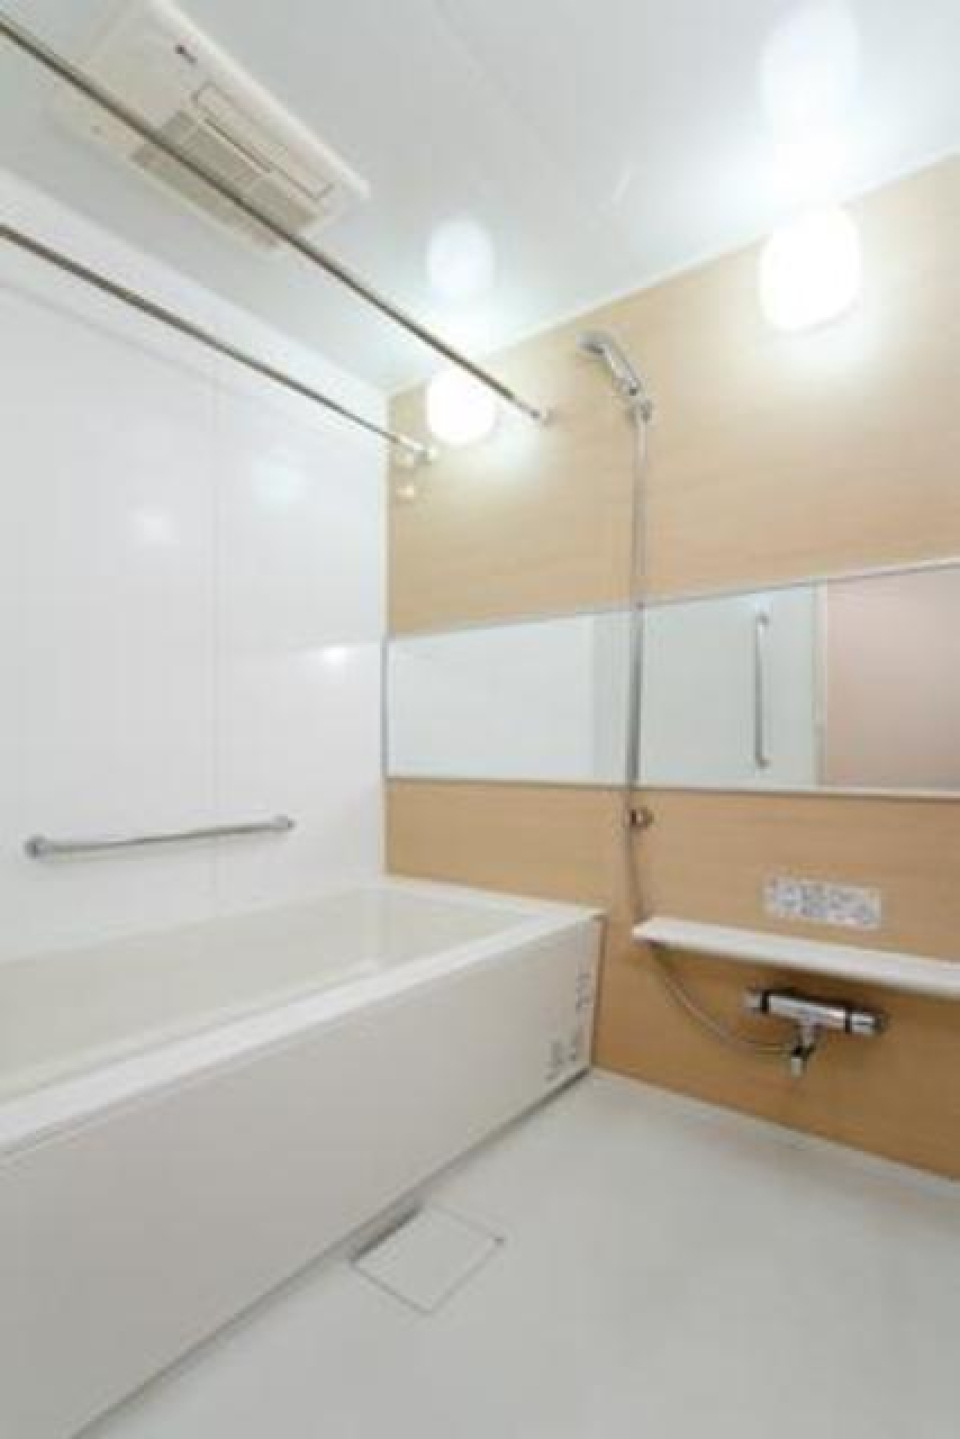 ナチュラルなパネルが採用された浴室です。※写真は同タイプ住戸です。